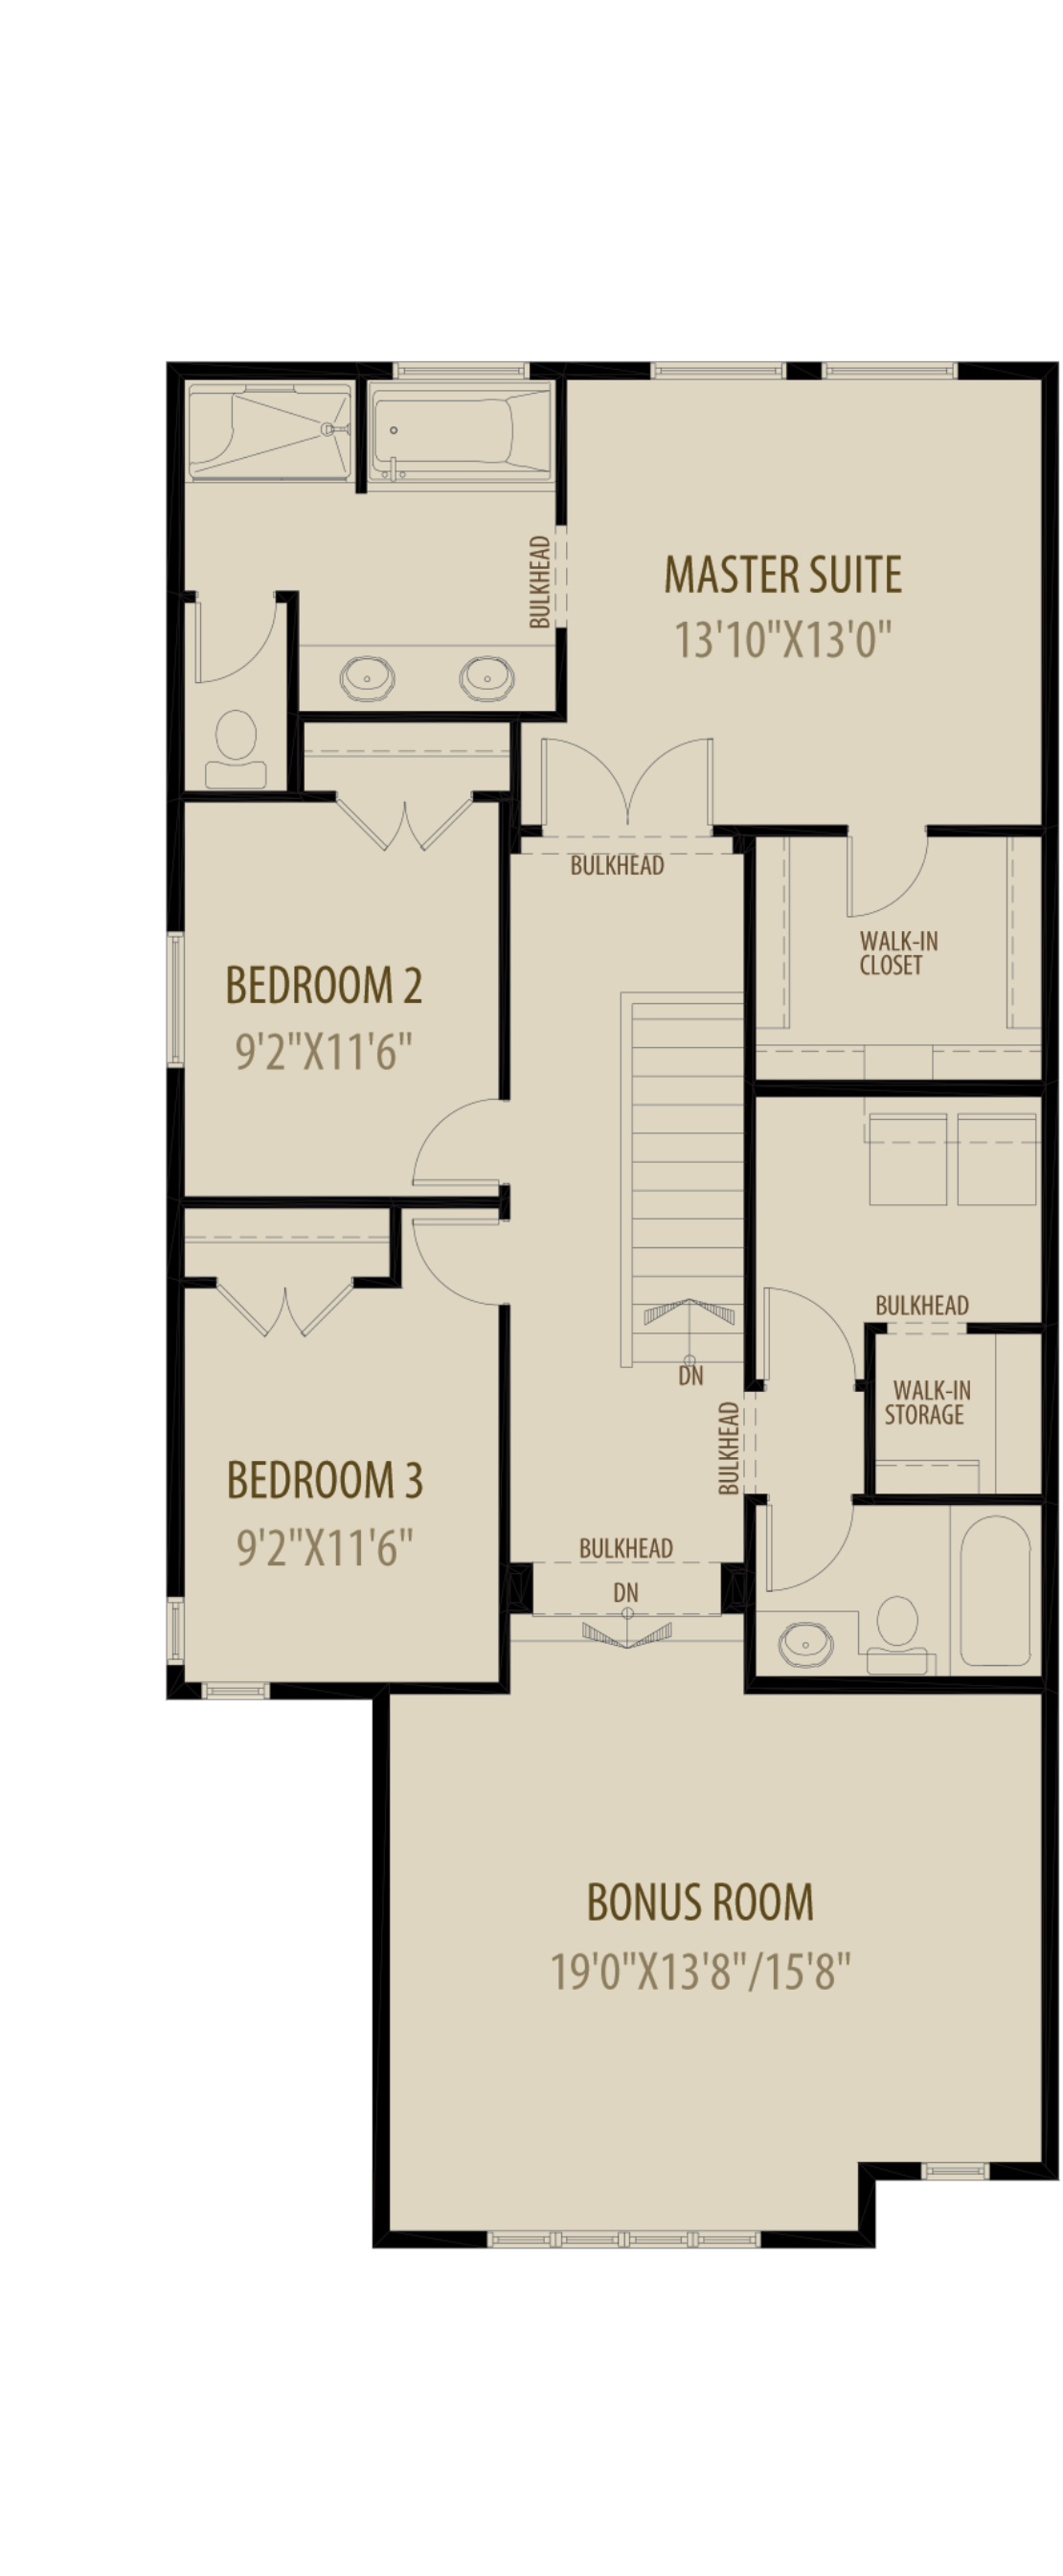 Extended Bonus Room - Livingston Standard Plan (Adds 60 Sq Ft)